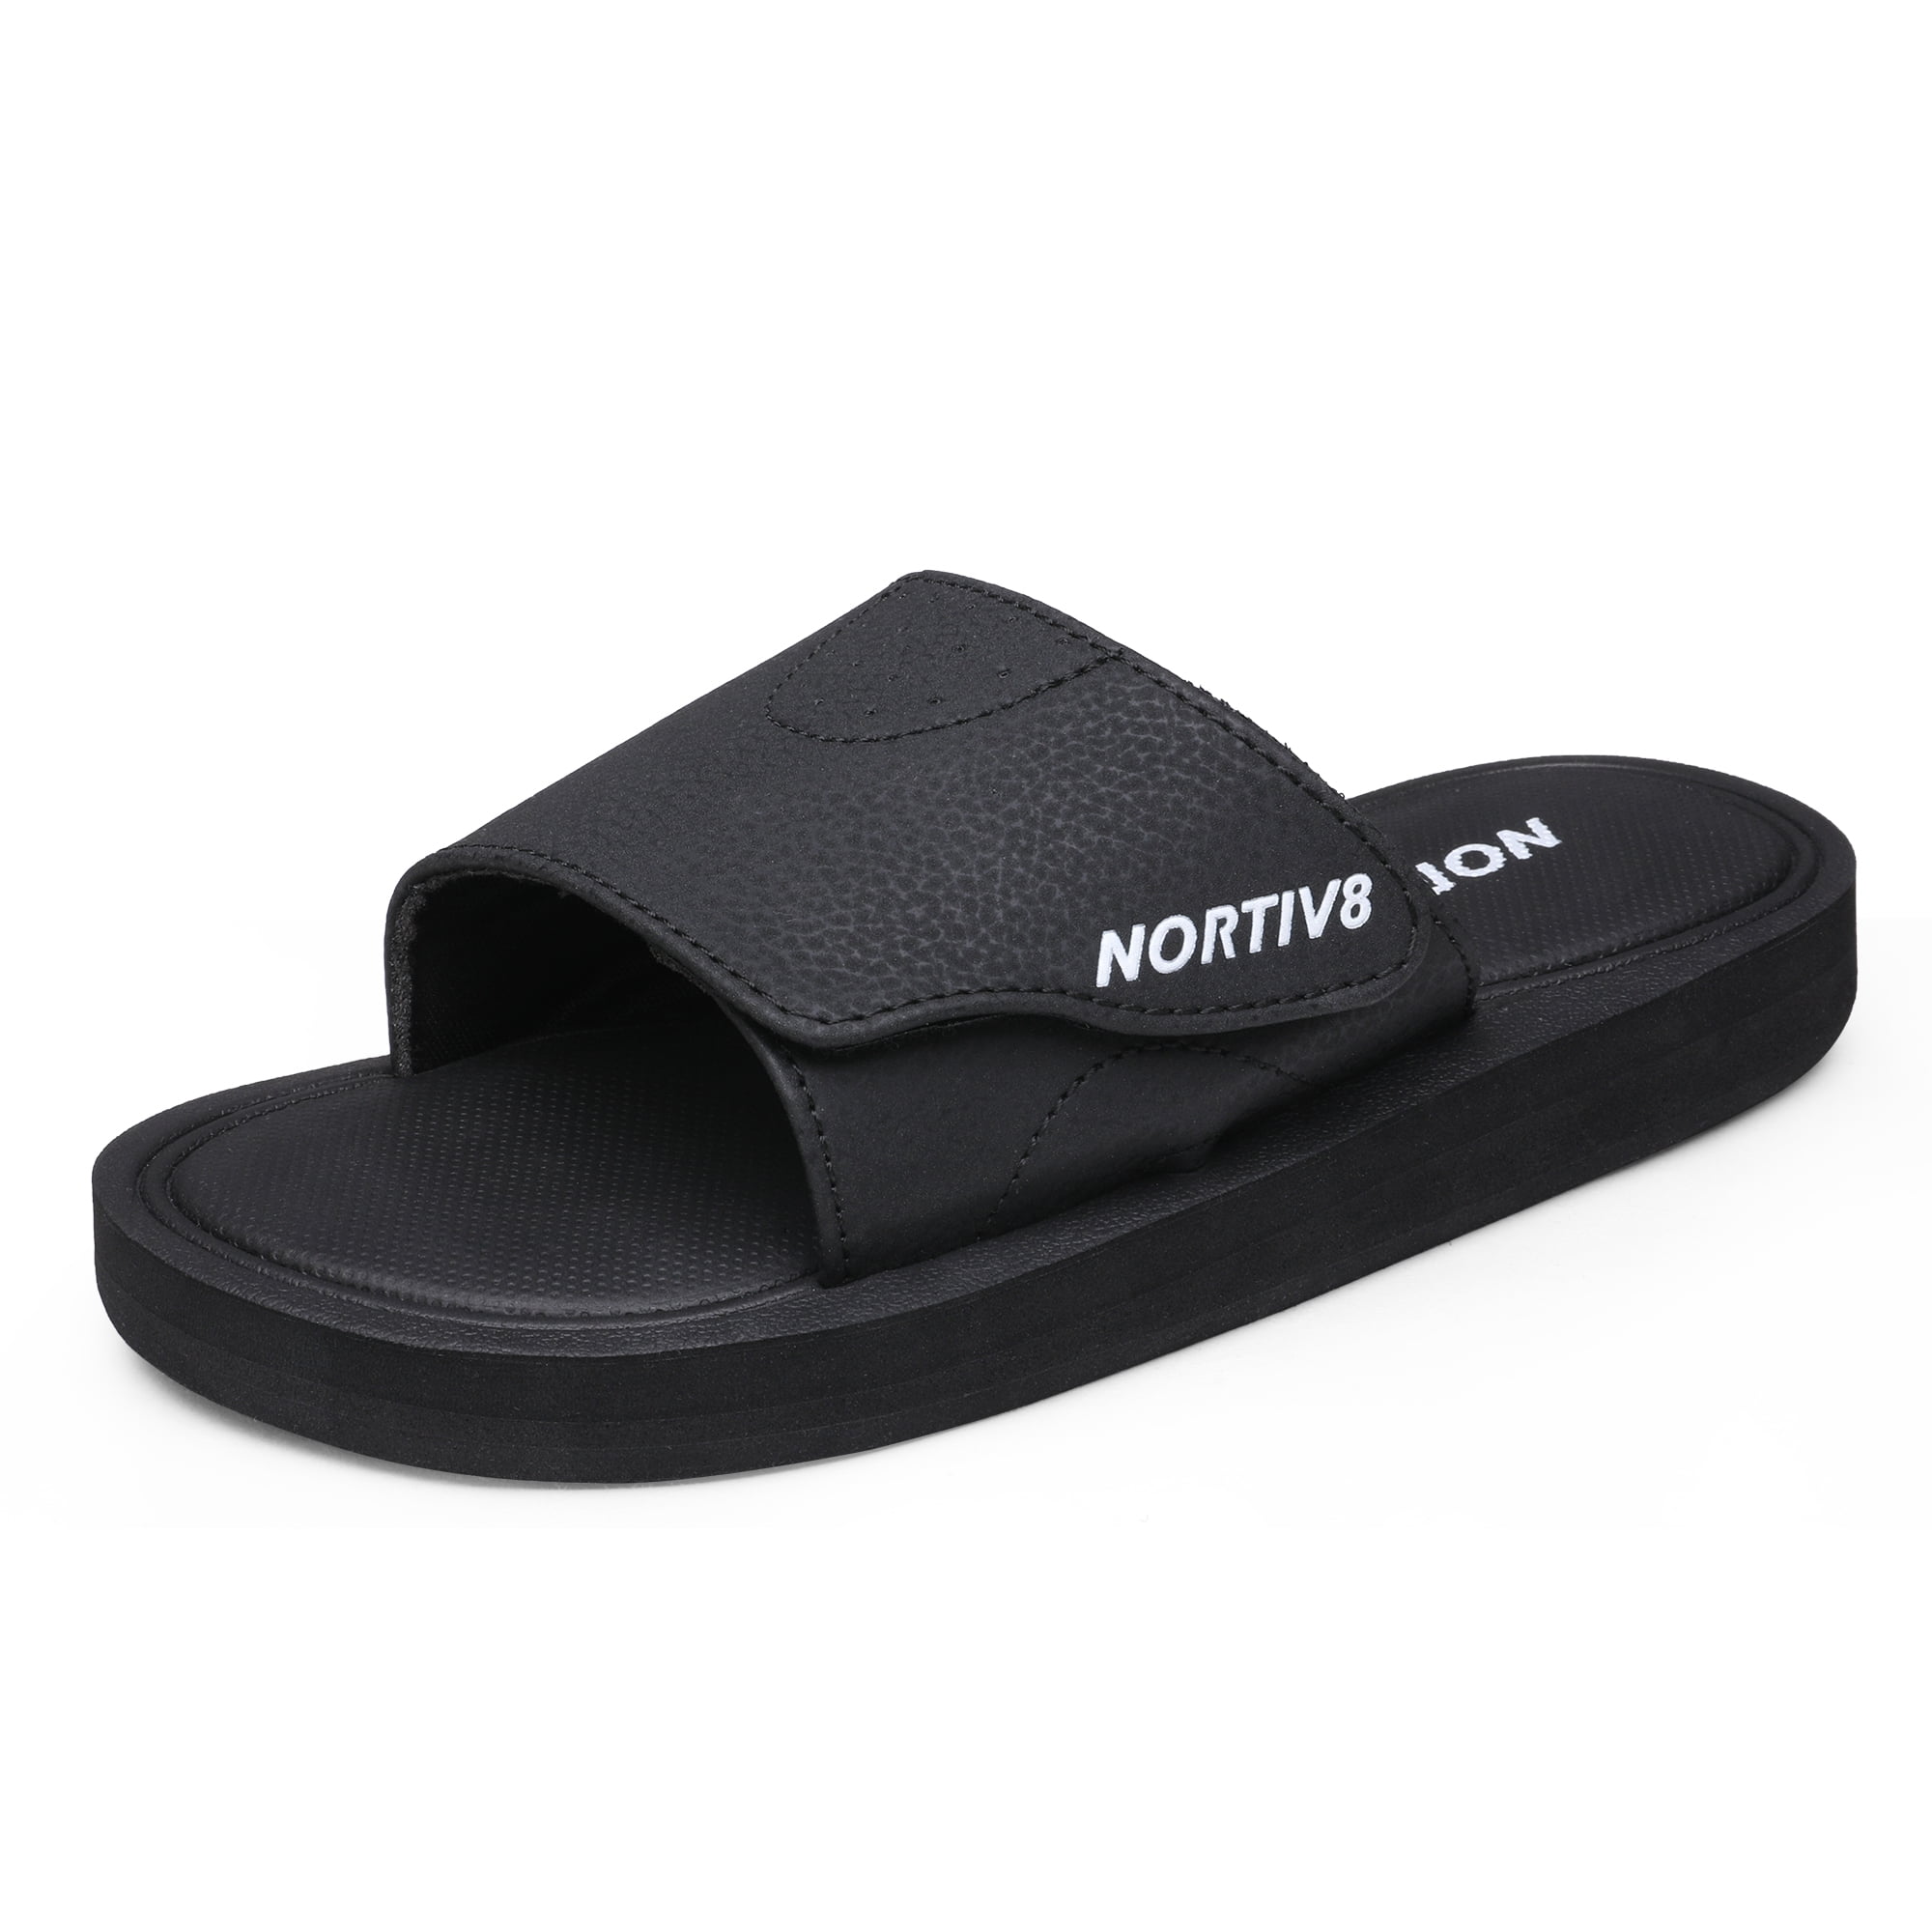 Nortiv8 Women Slide Sandals Summer Comfort Memory Foam Lightweight ...